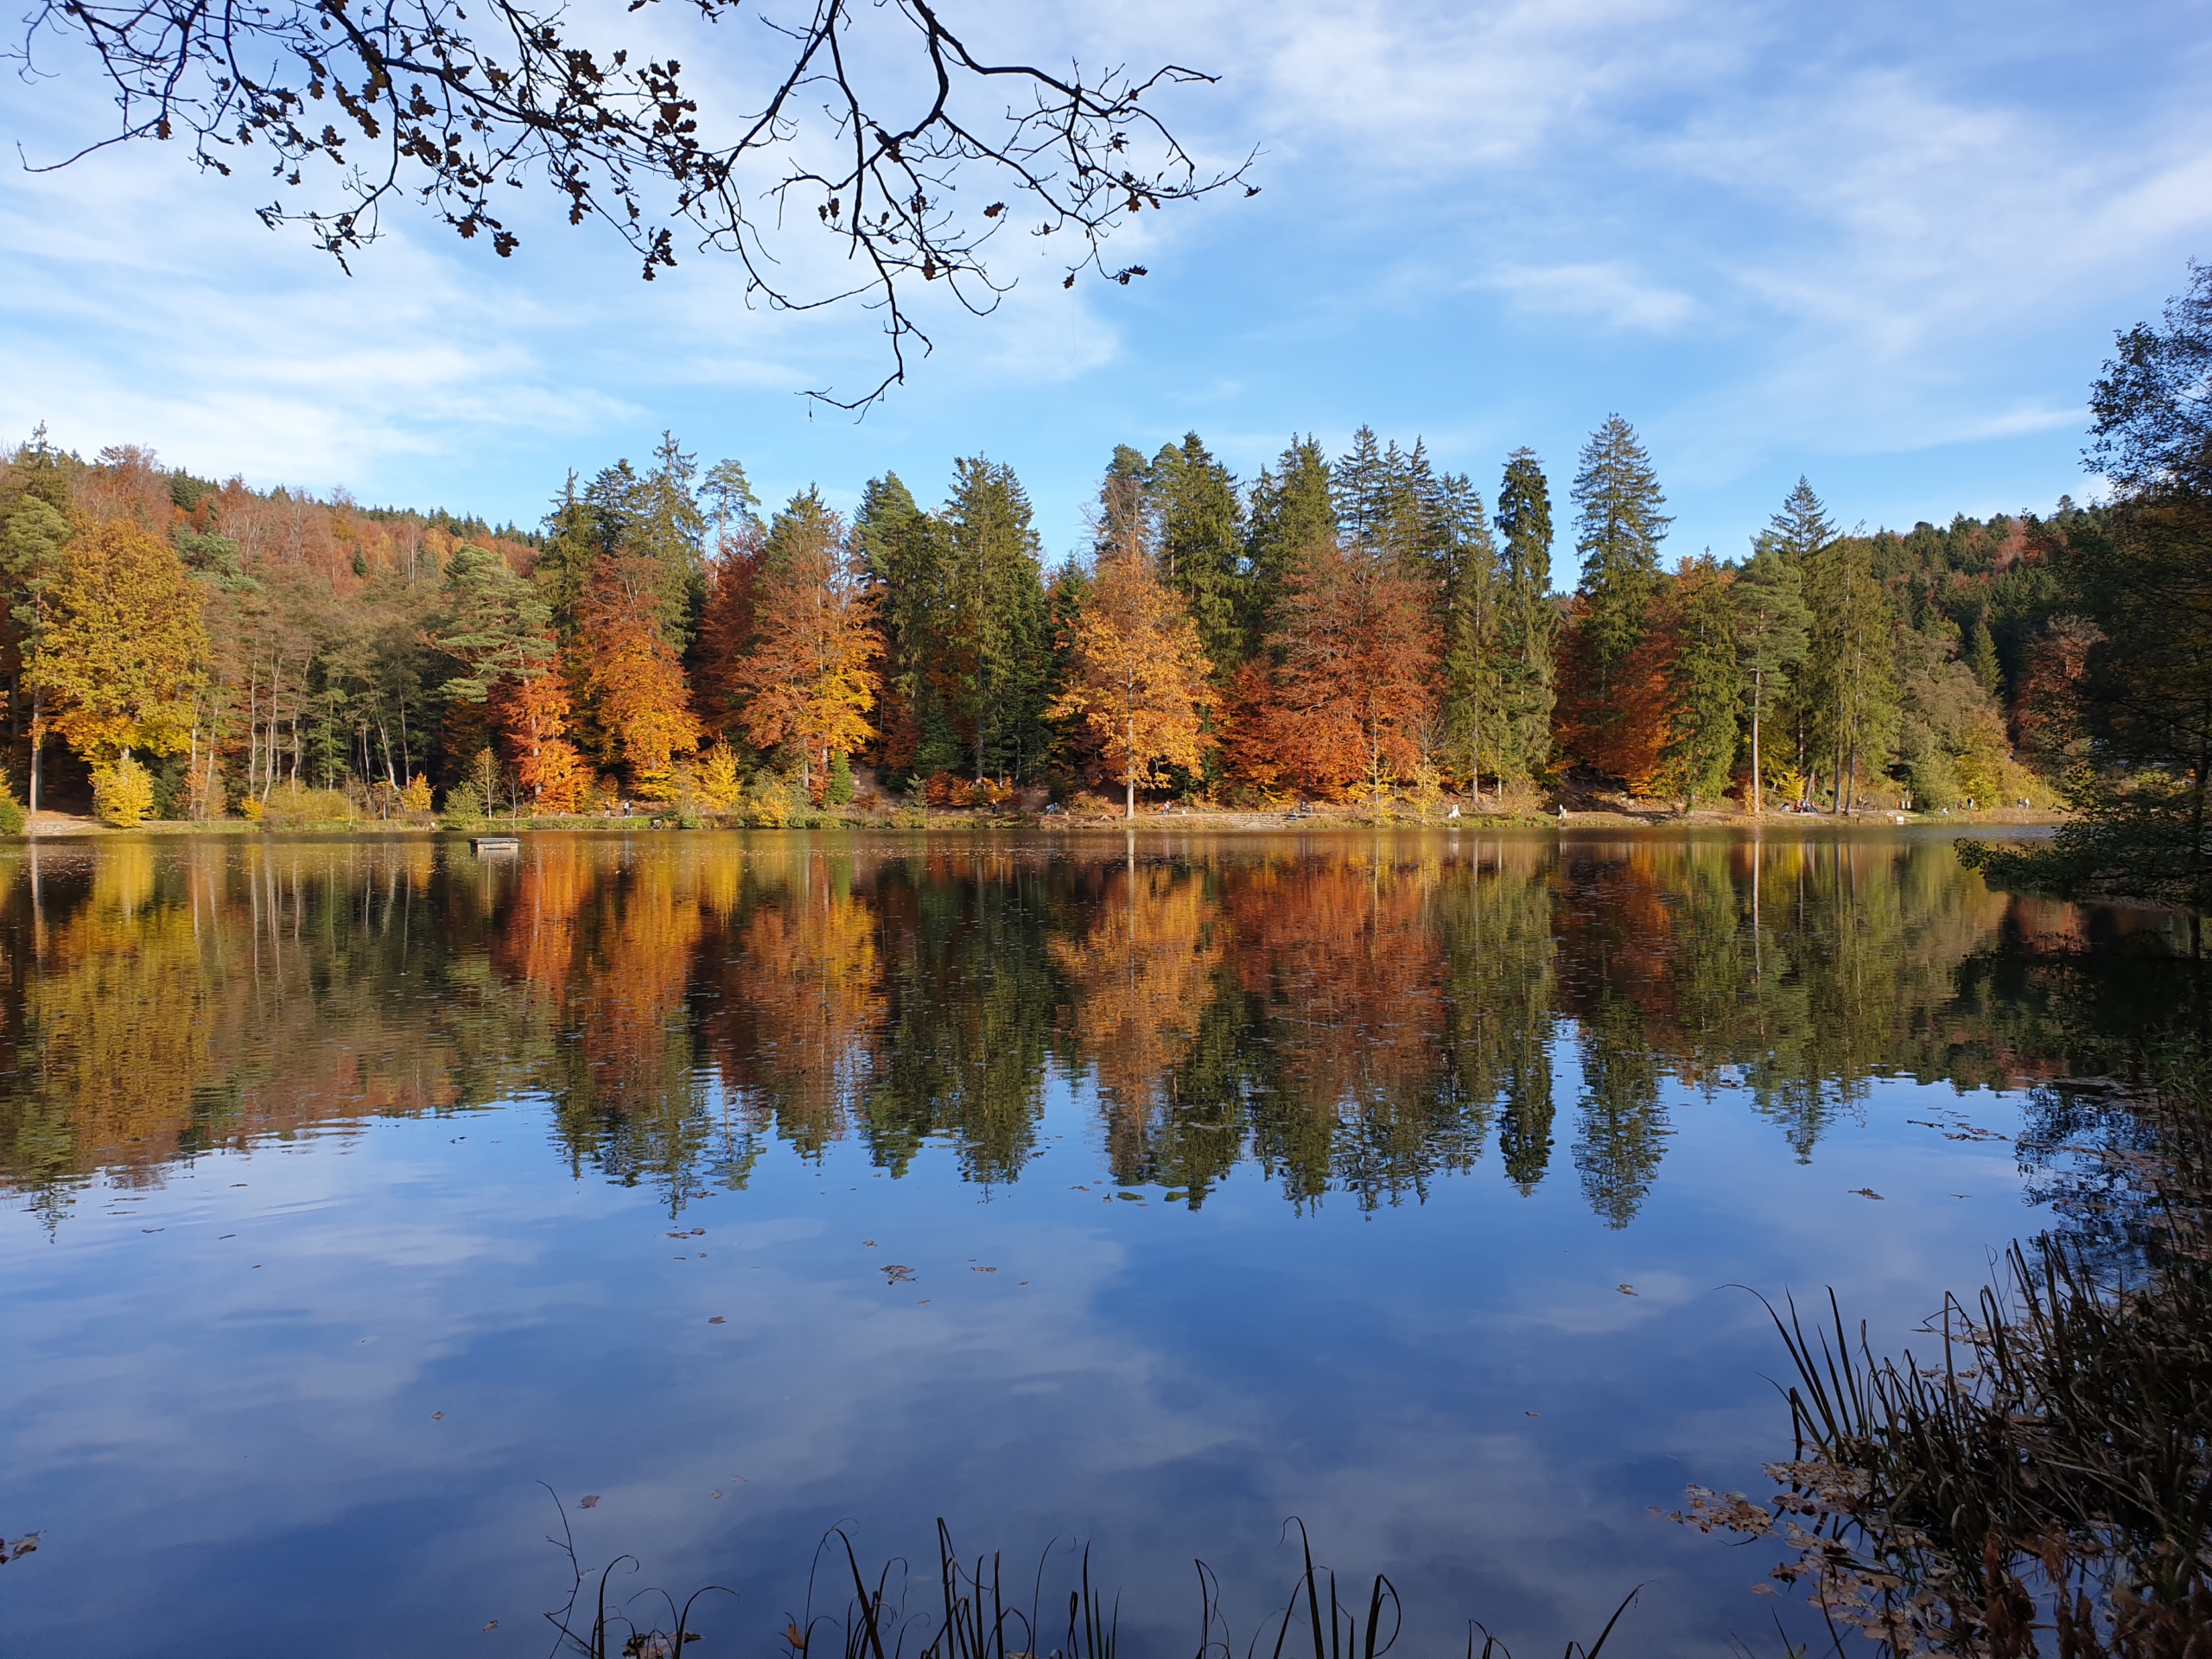 Bild zeigt einen bunten Herbstwald, der sich im Wasser eines Sees spiegelt.